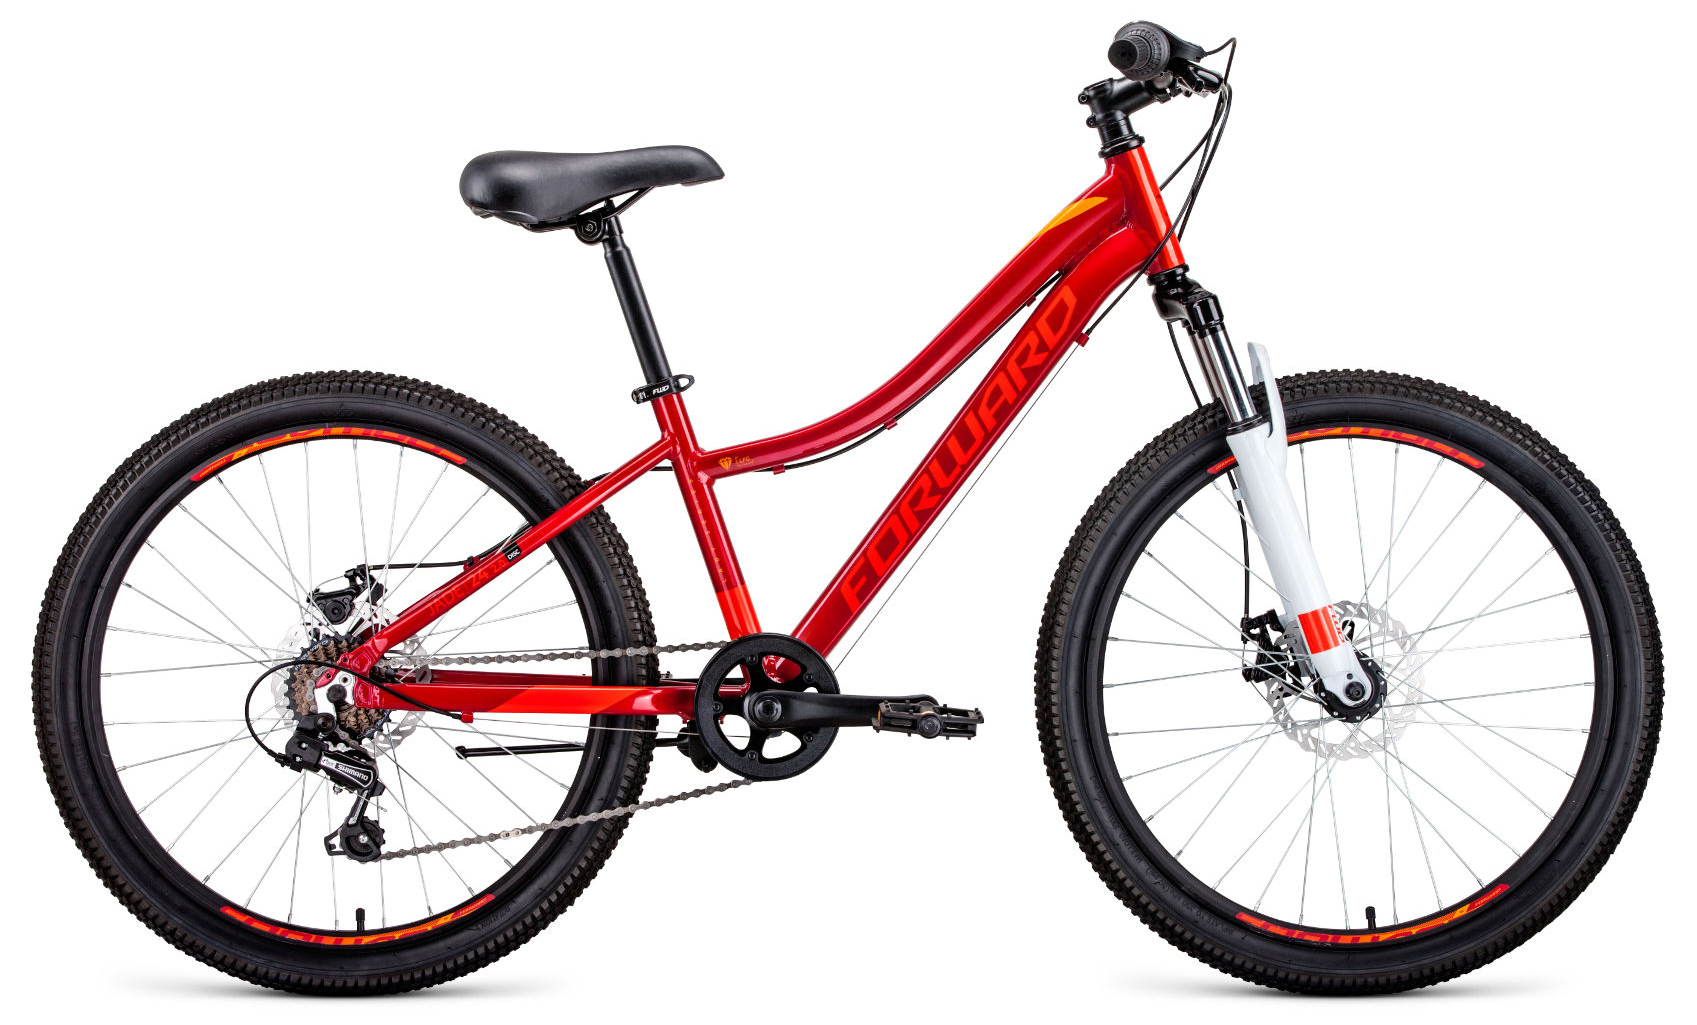  Отзывы о Подростковом велосипеде Forward Jade 24 2.0 Disc 2020